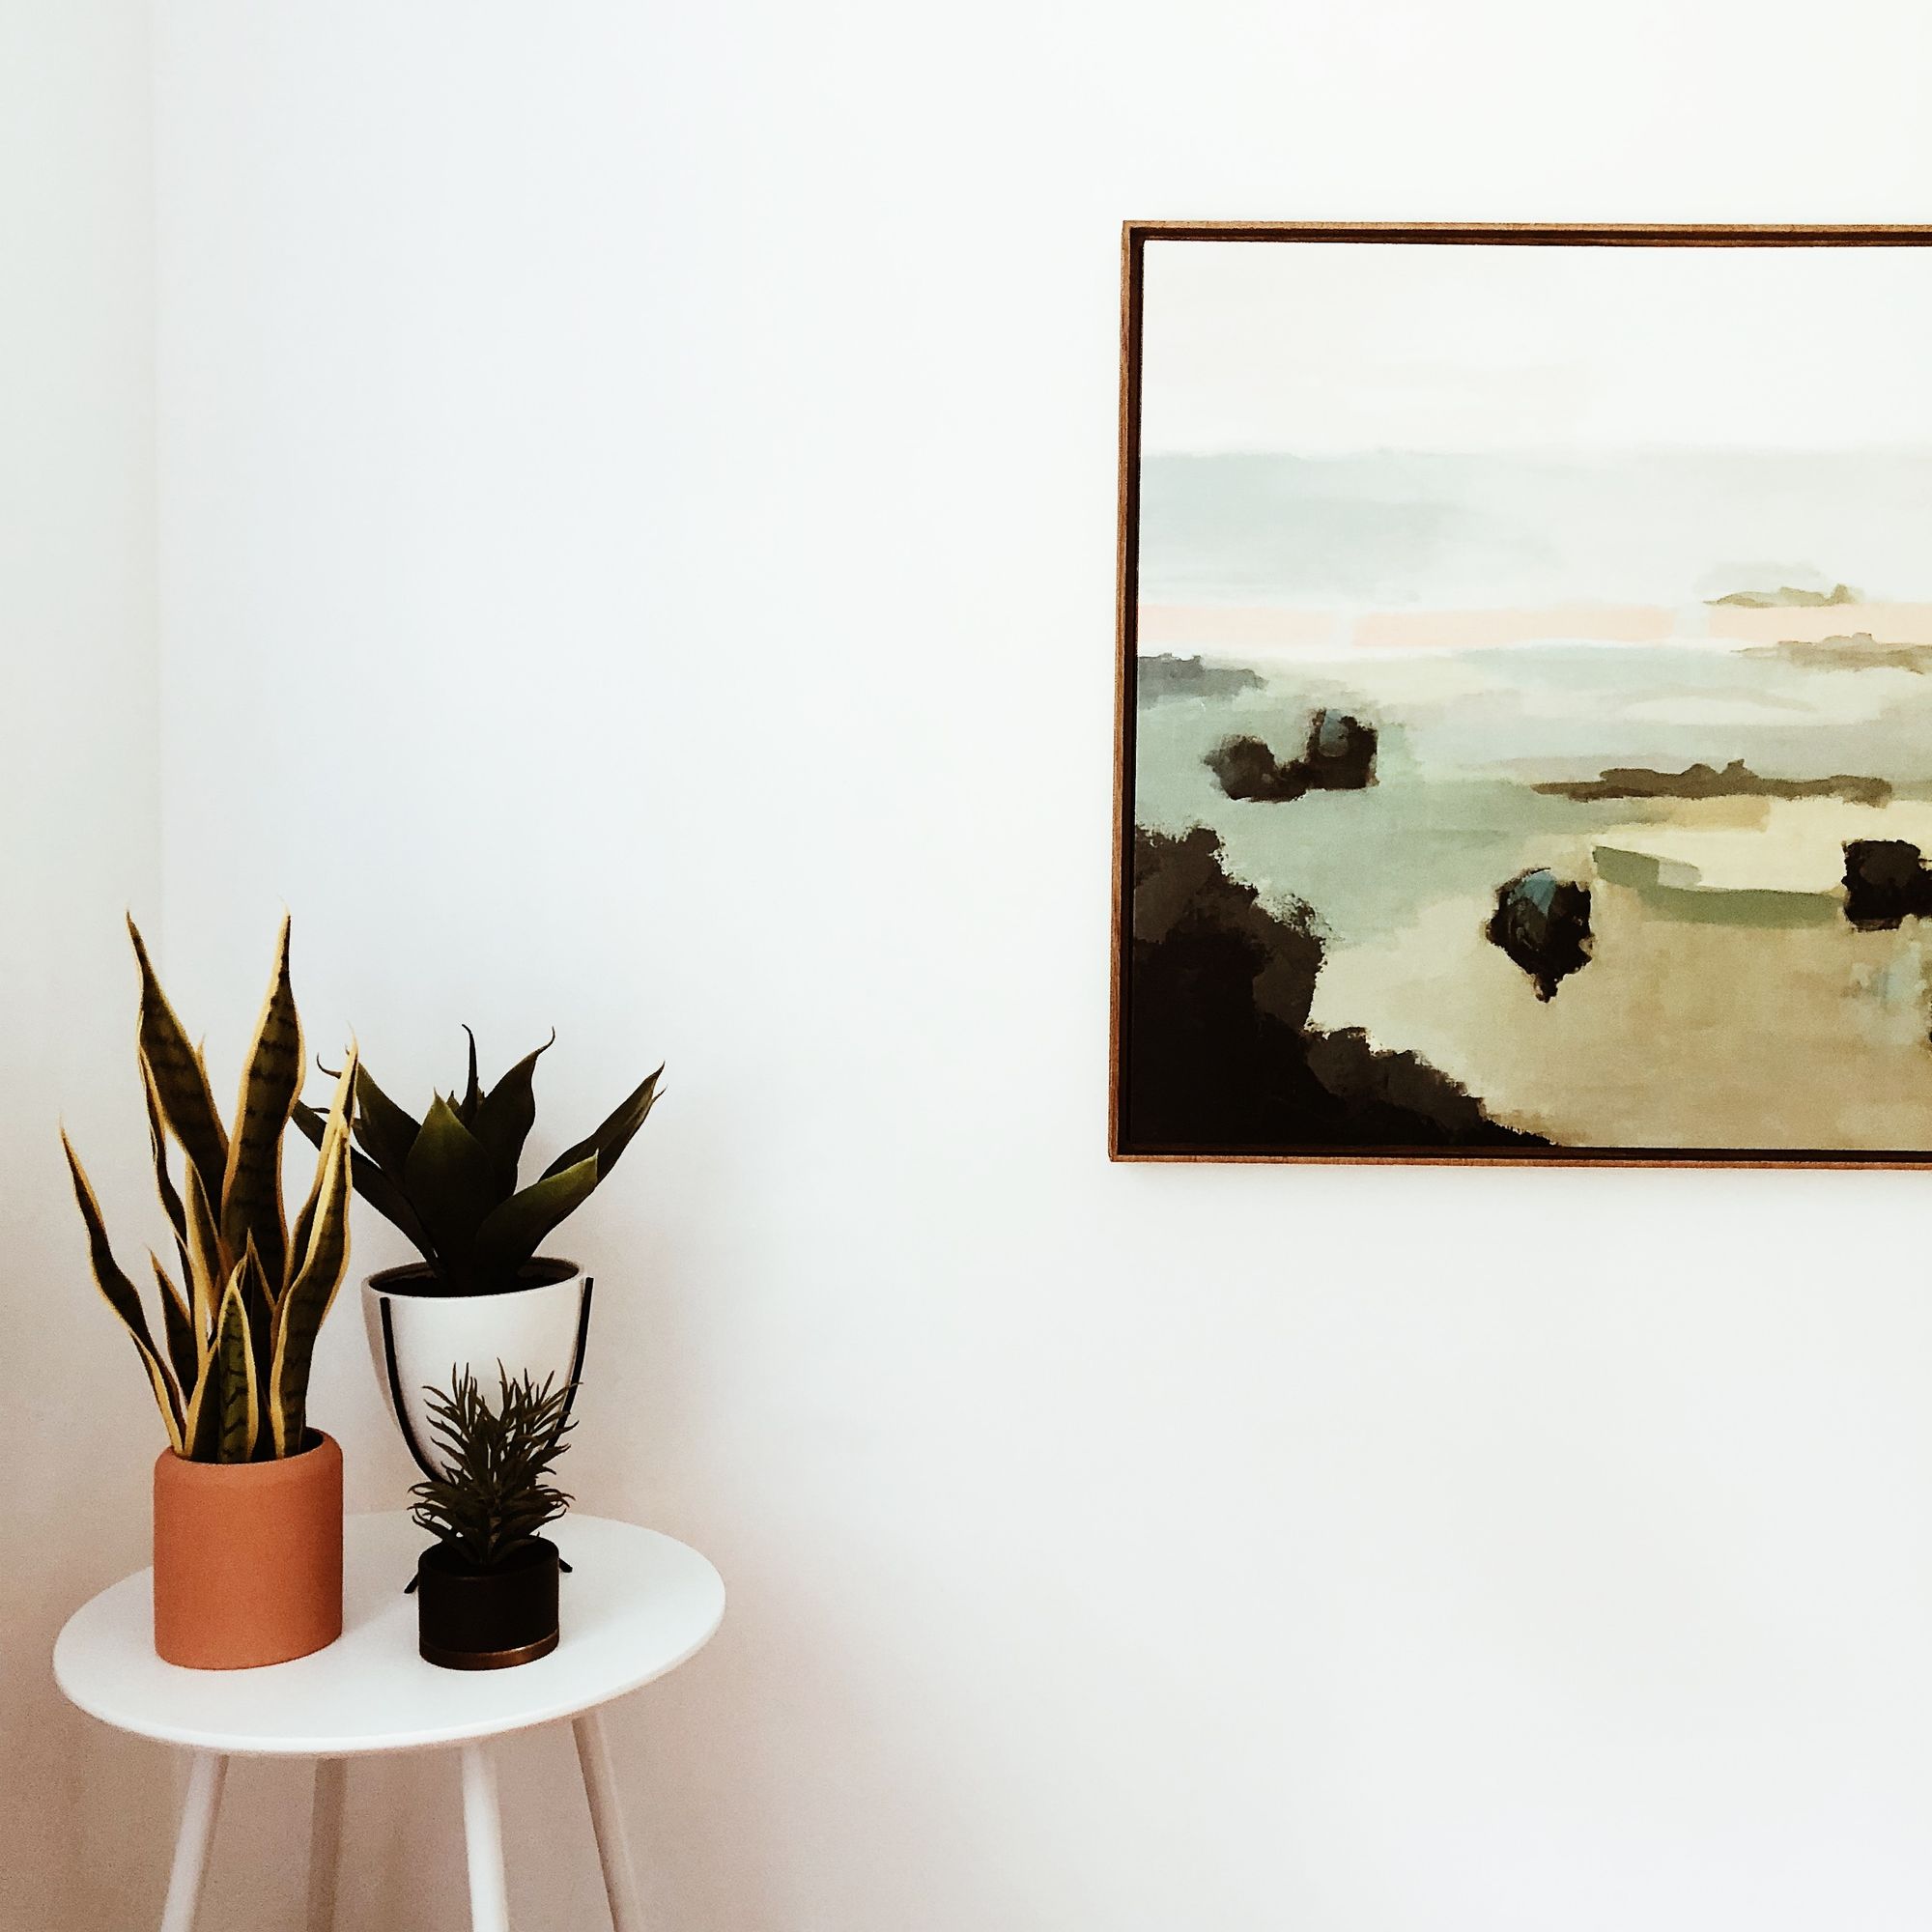 Cómo colgar bien un cuadro y cómo exponer arte en casa